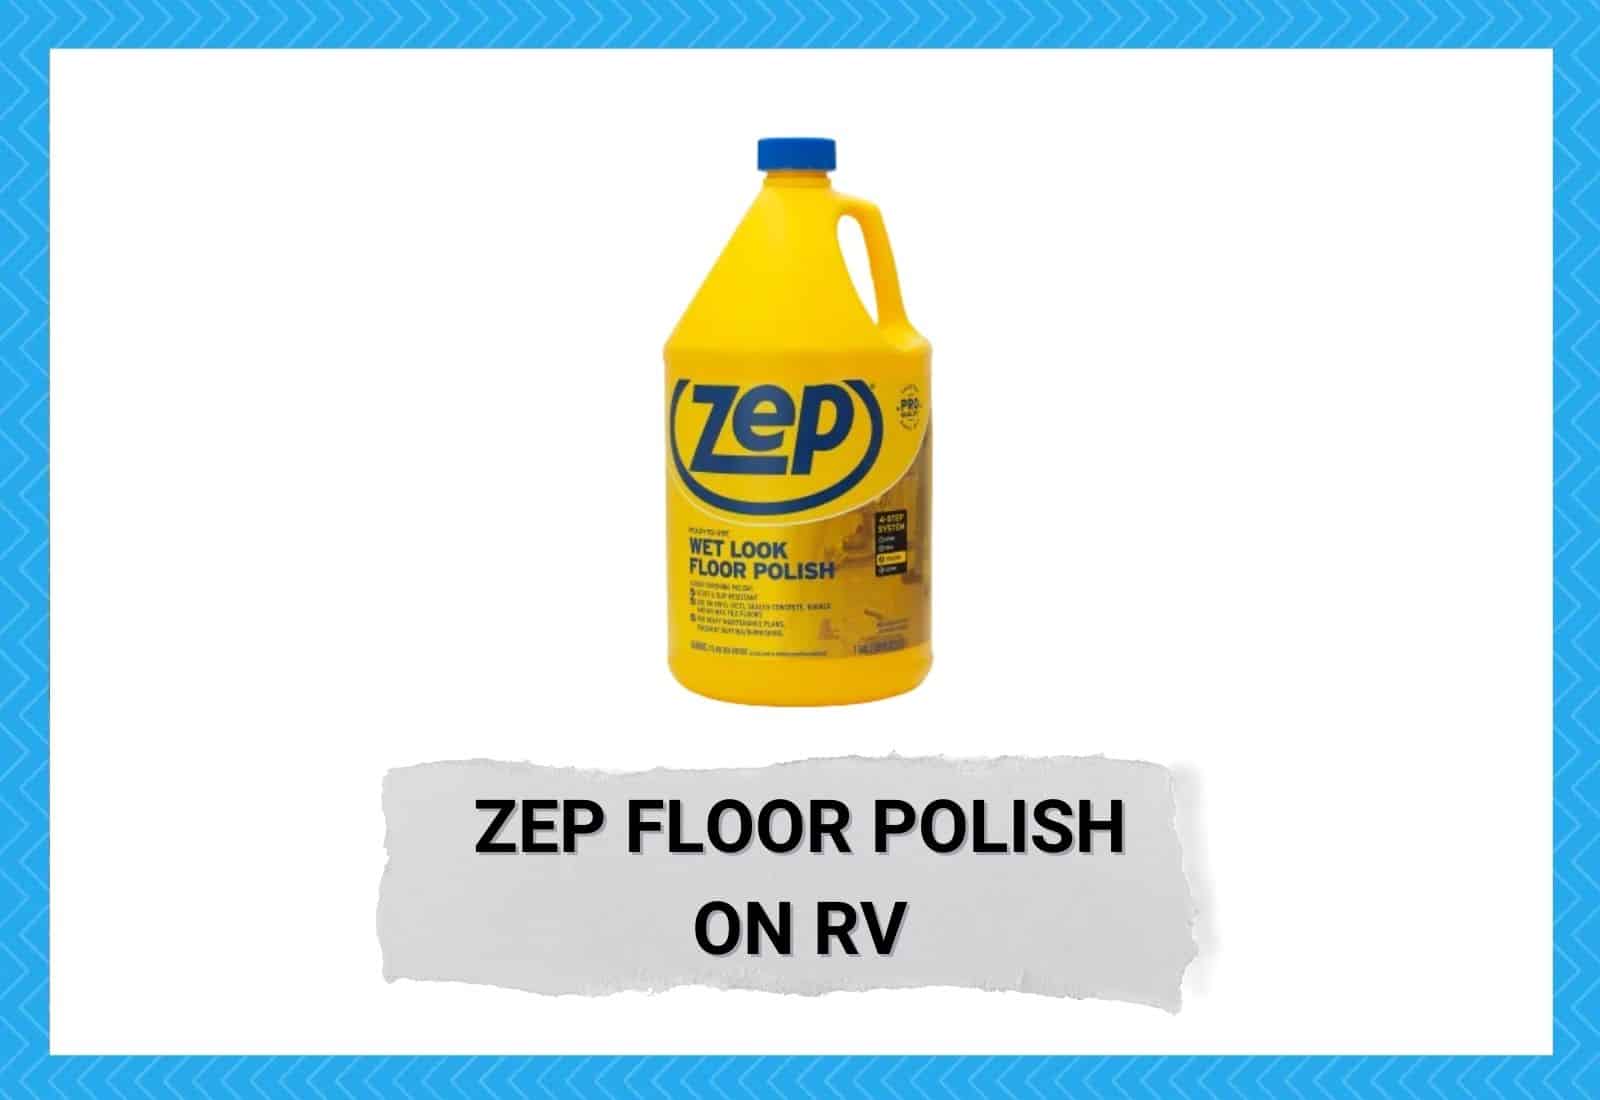 Zep Floor Polish On RV